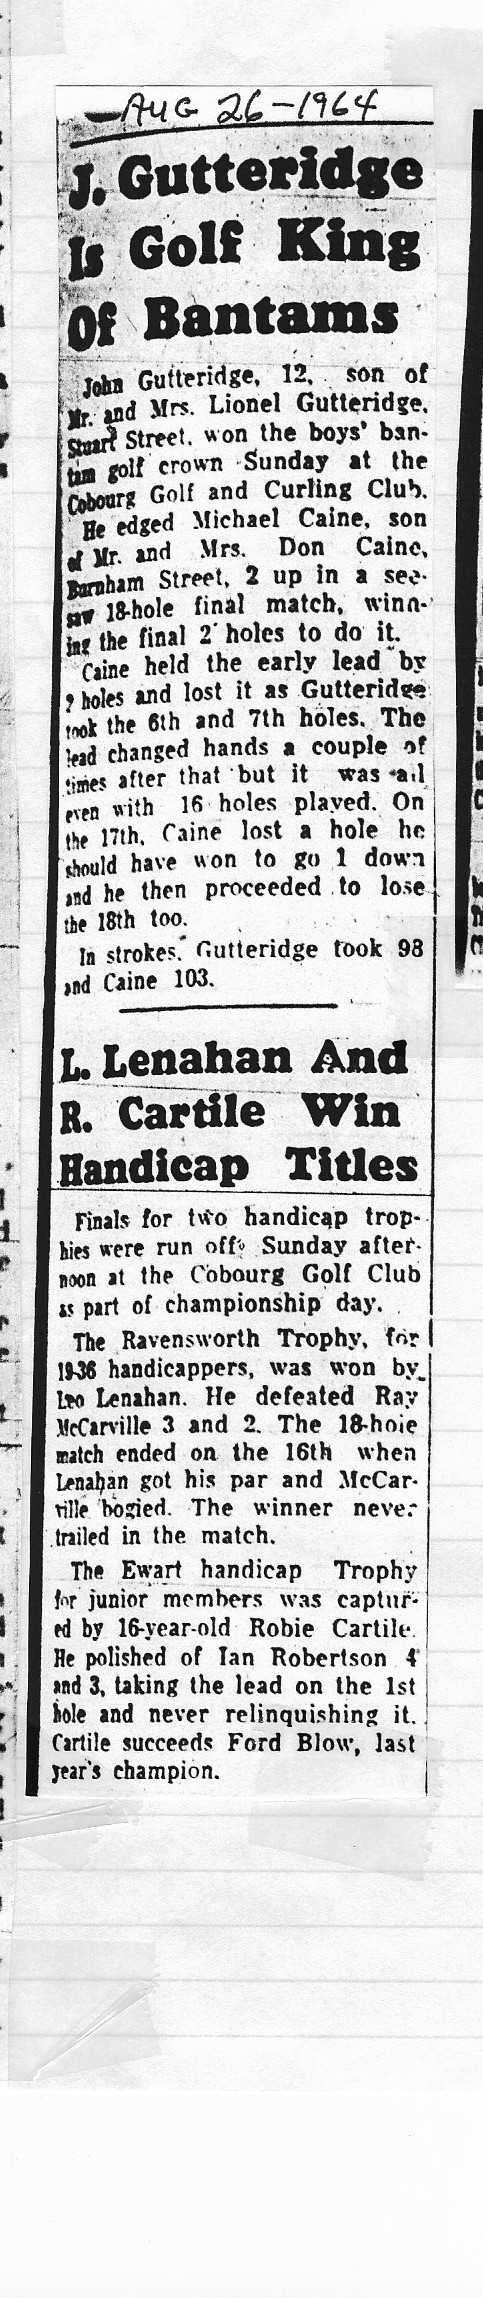 1964-08-26 Golf -Bantam Golf News-J